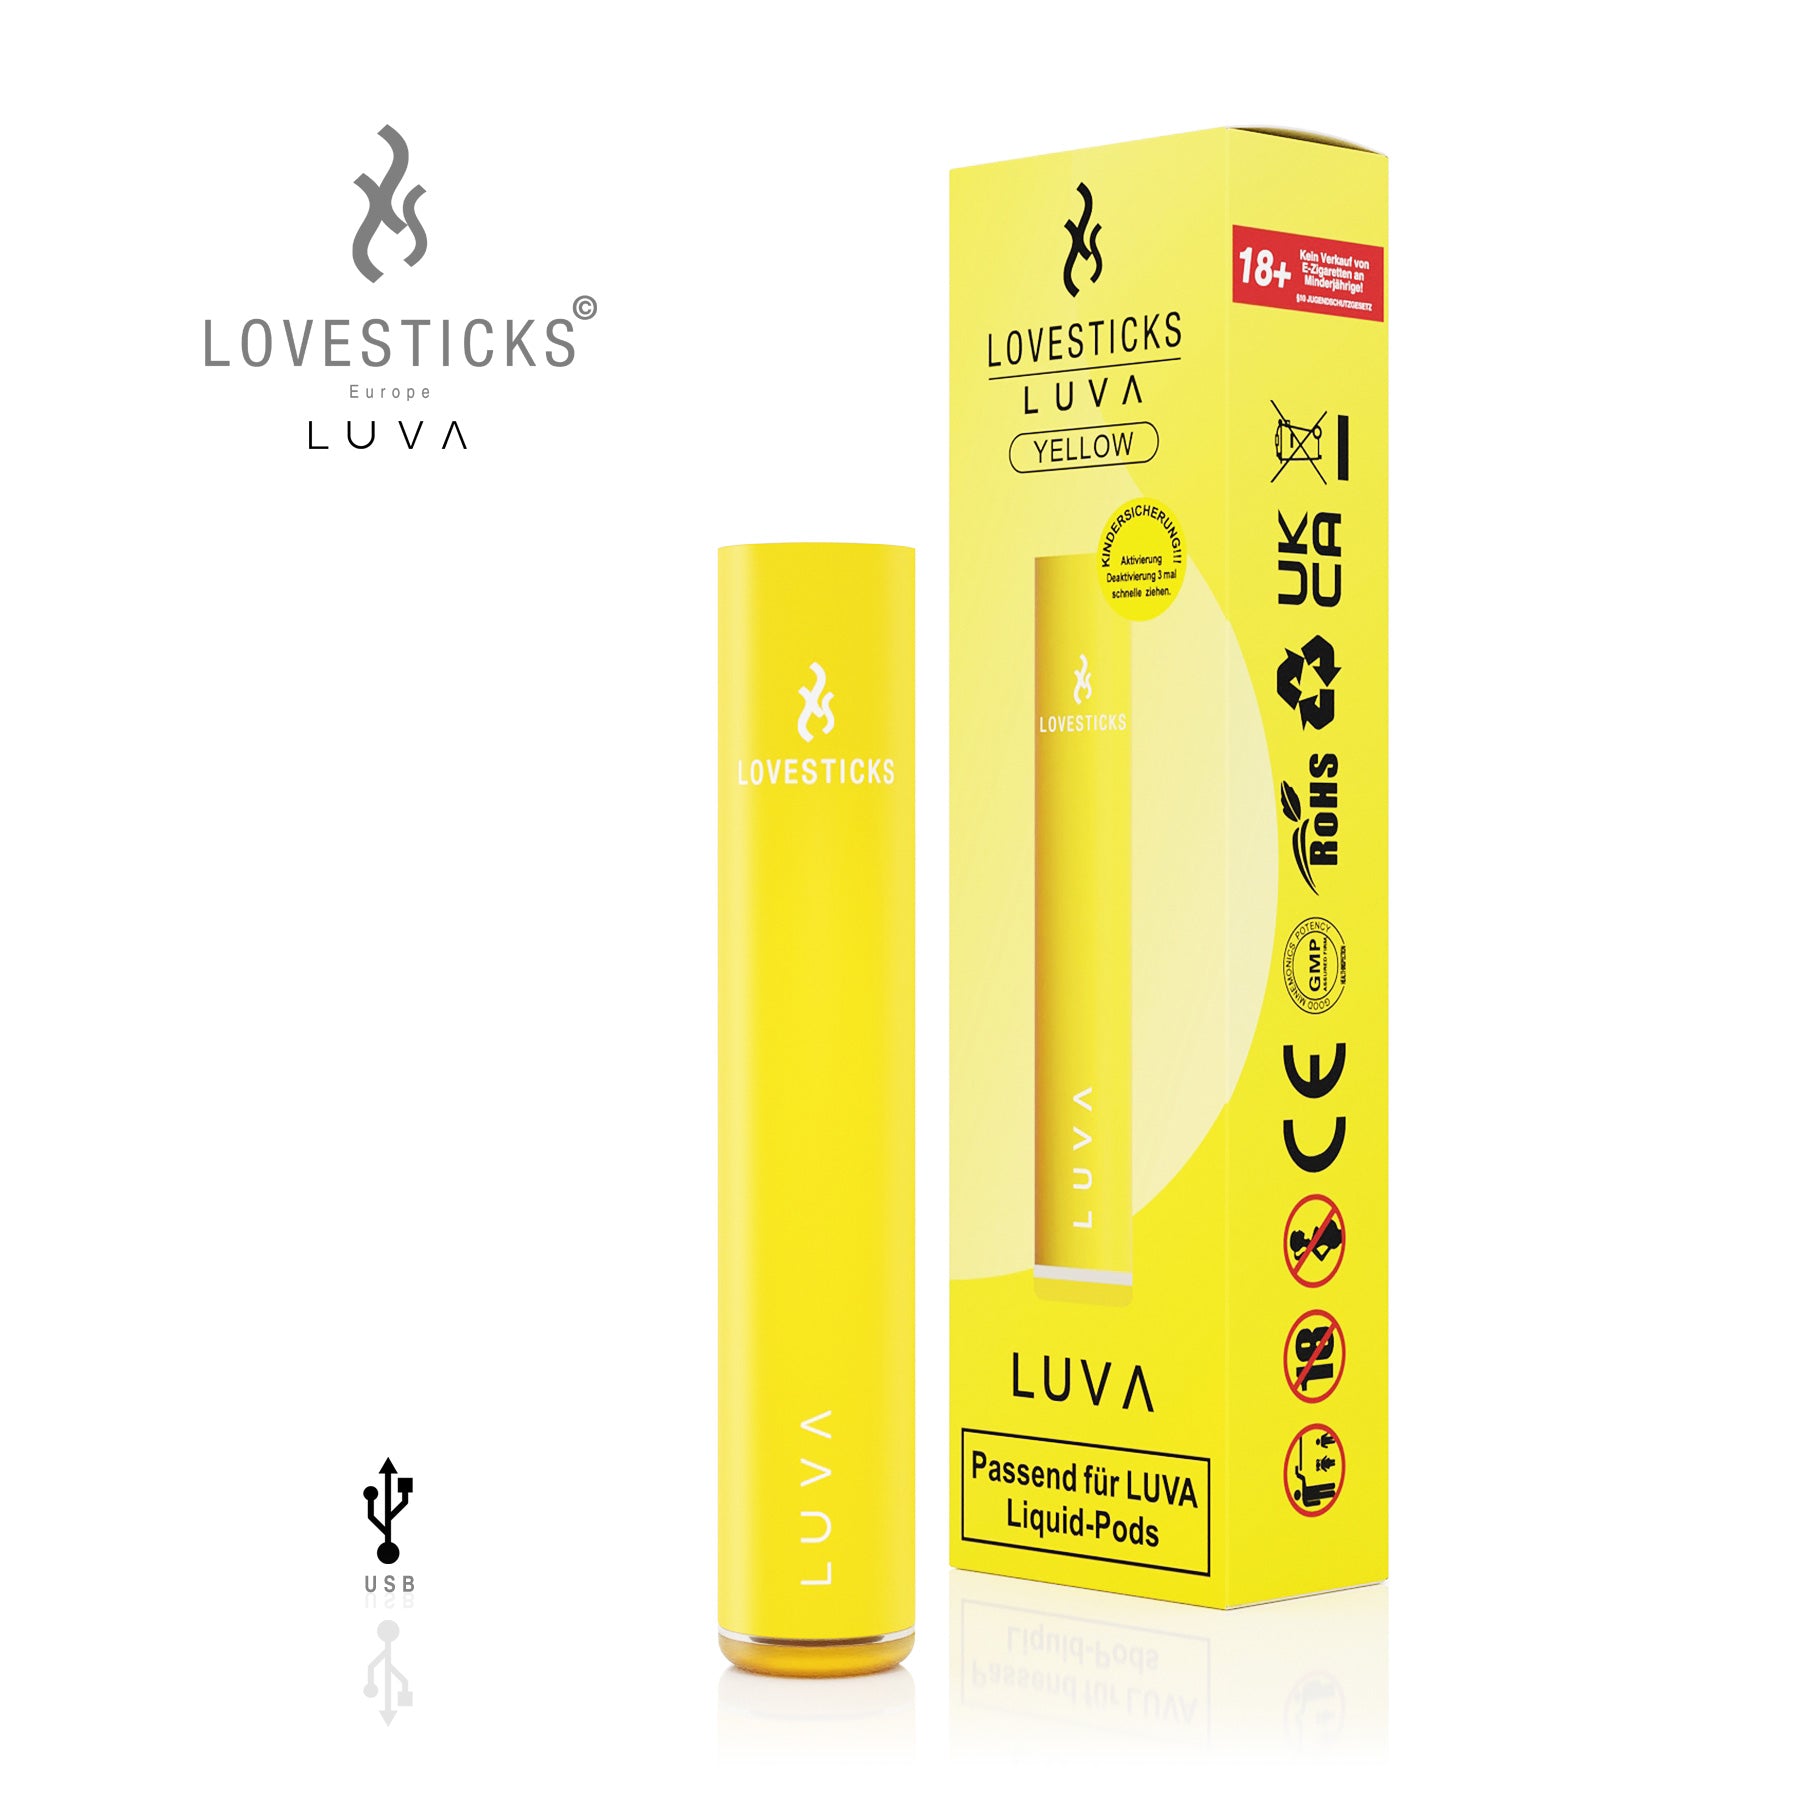 Lovesticks - LUVA YELLOW (8575594824012)